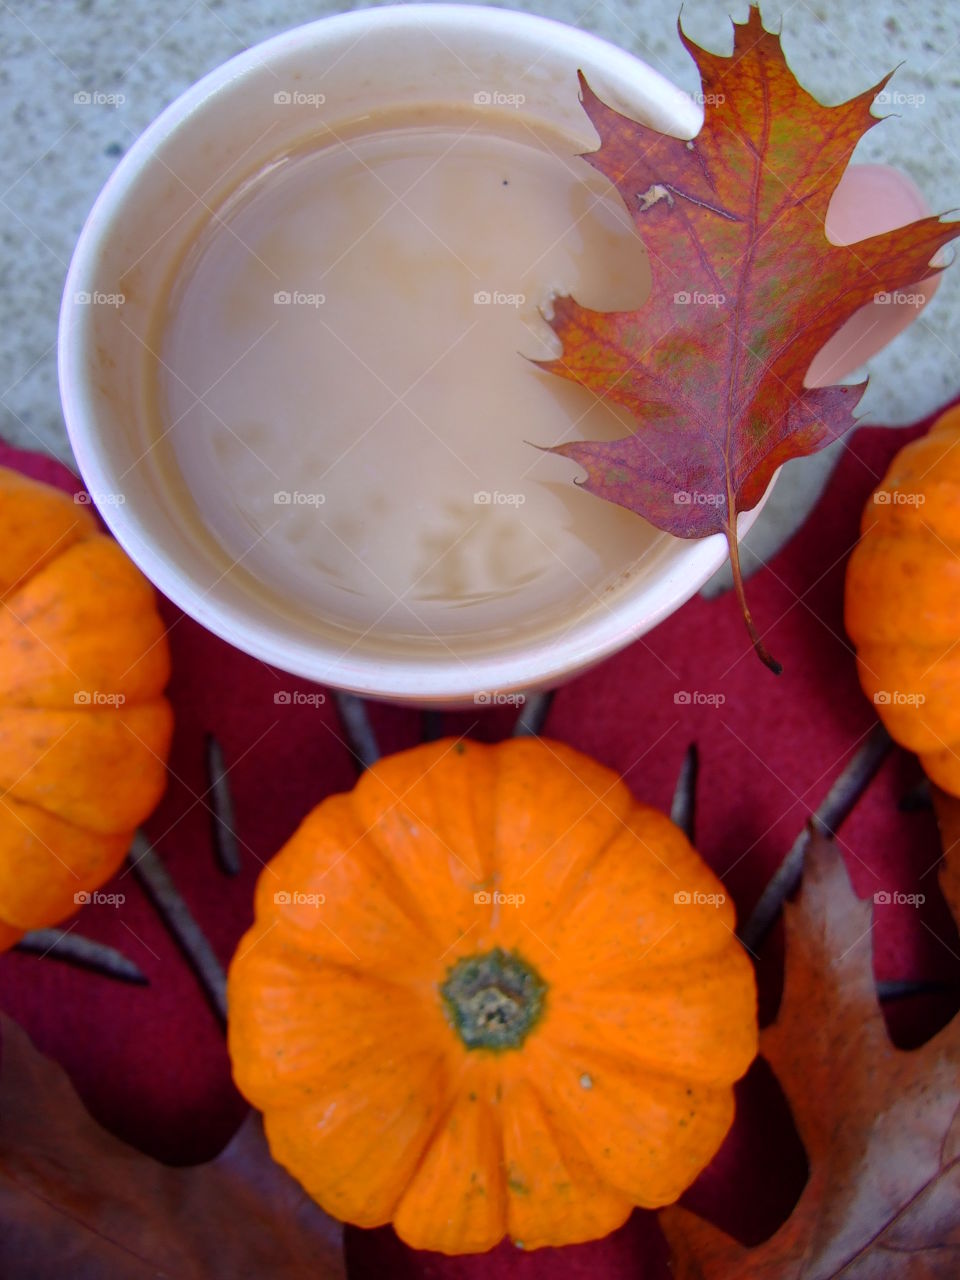 Tea, leaves, and pumpkins